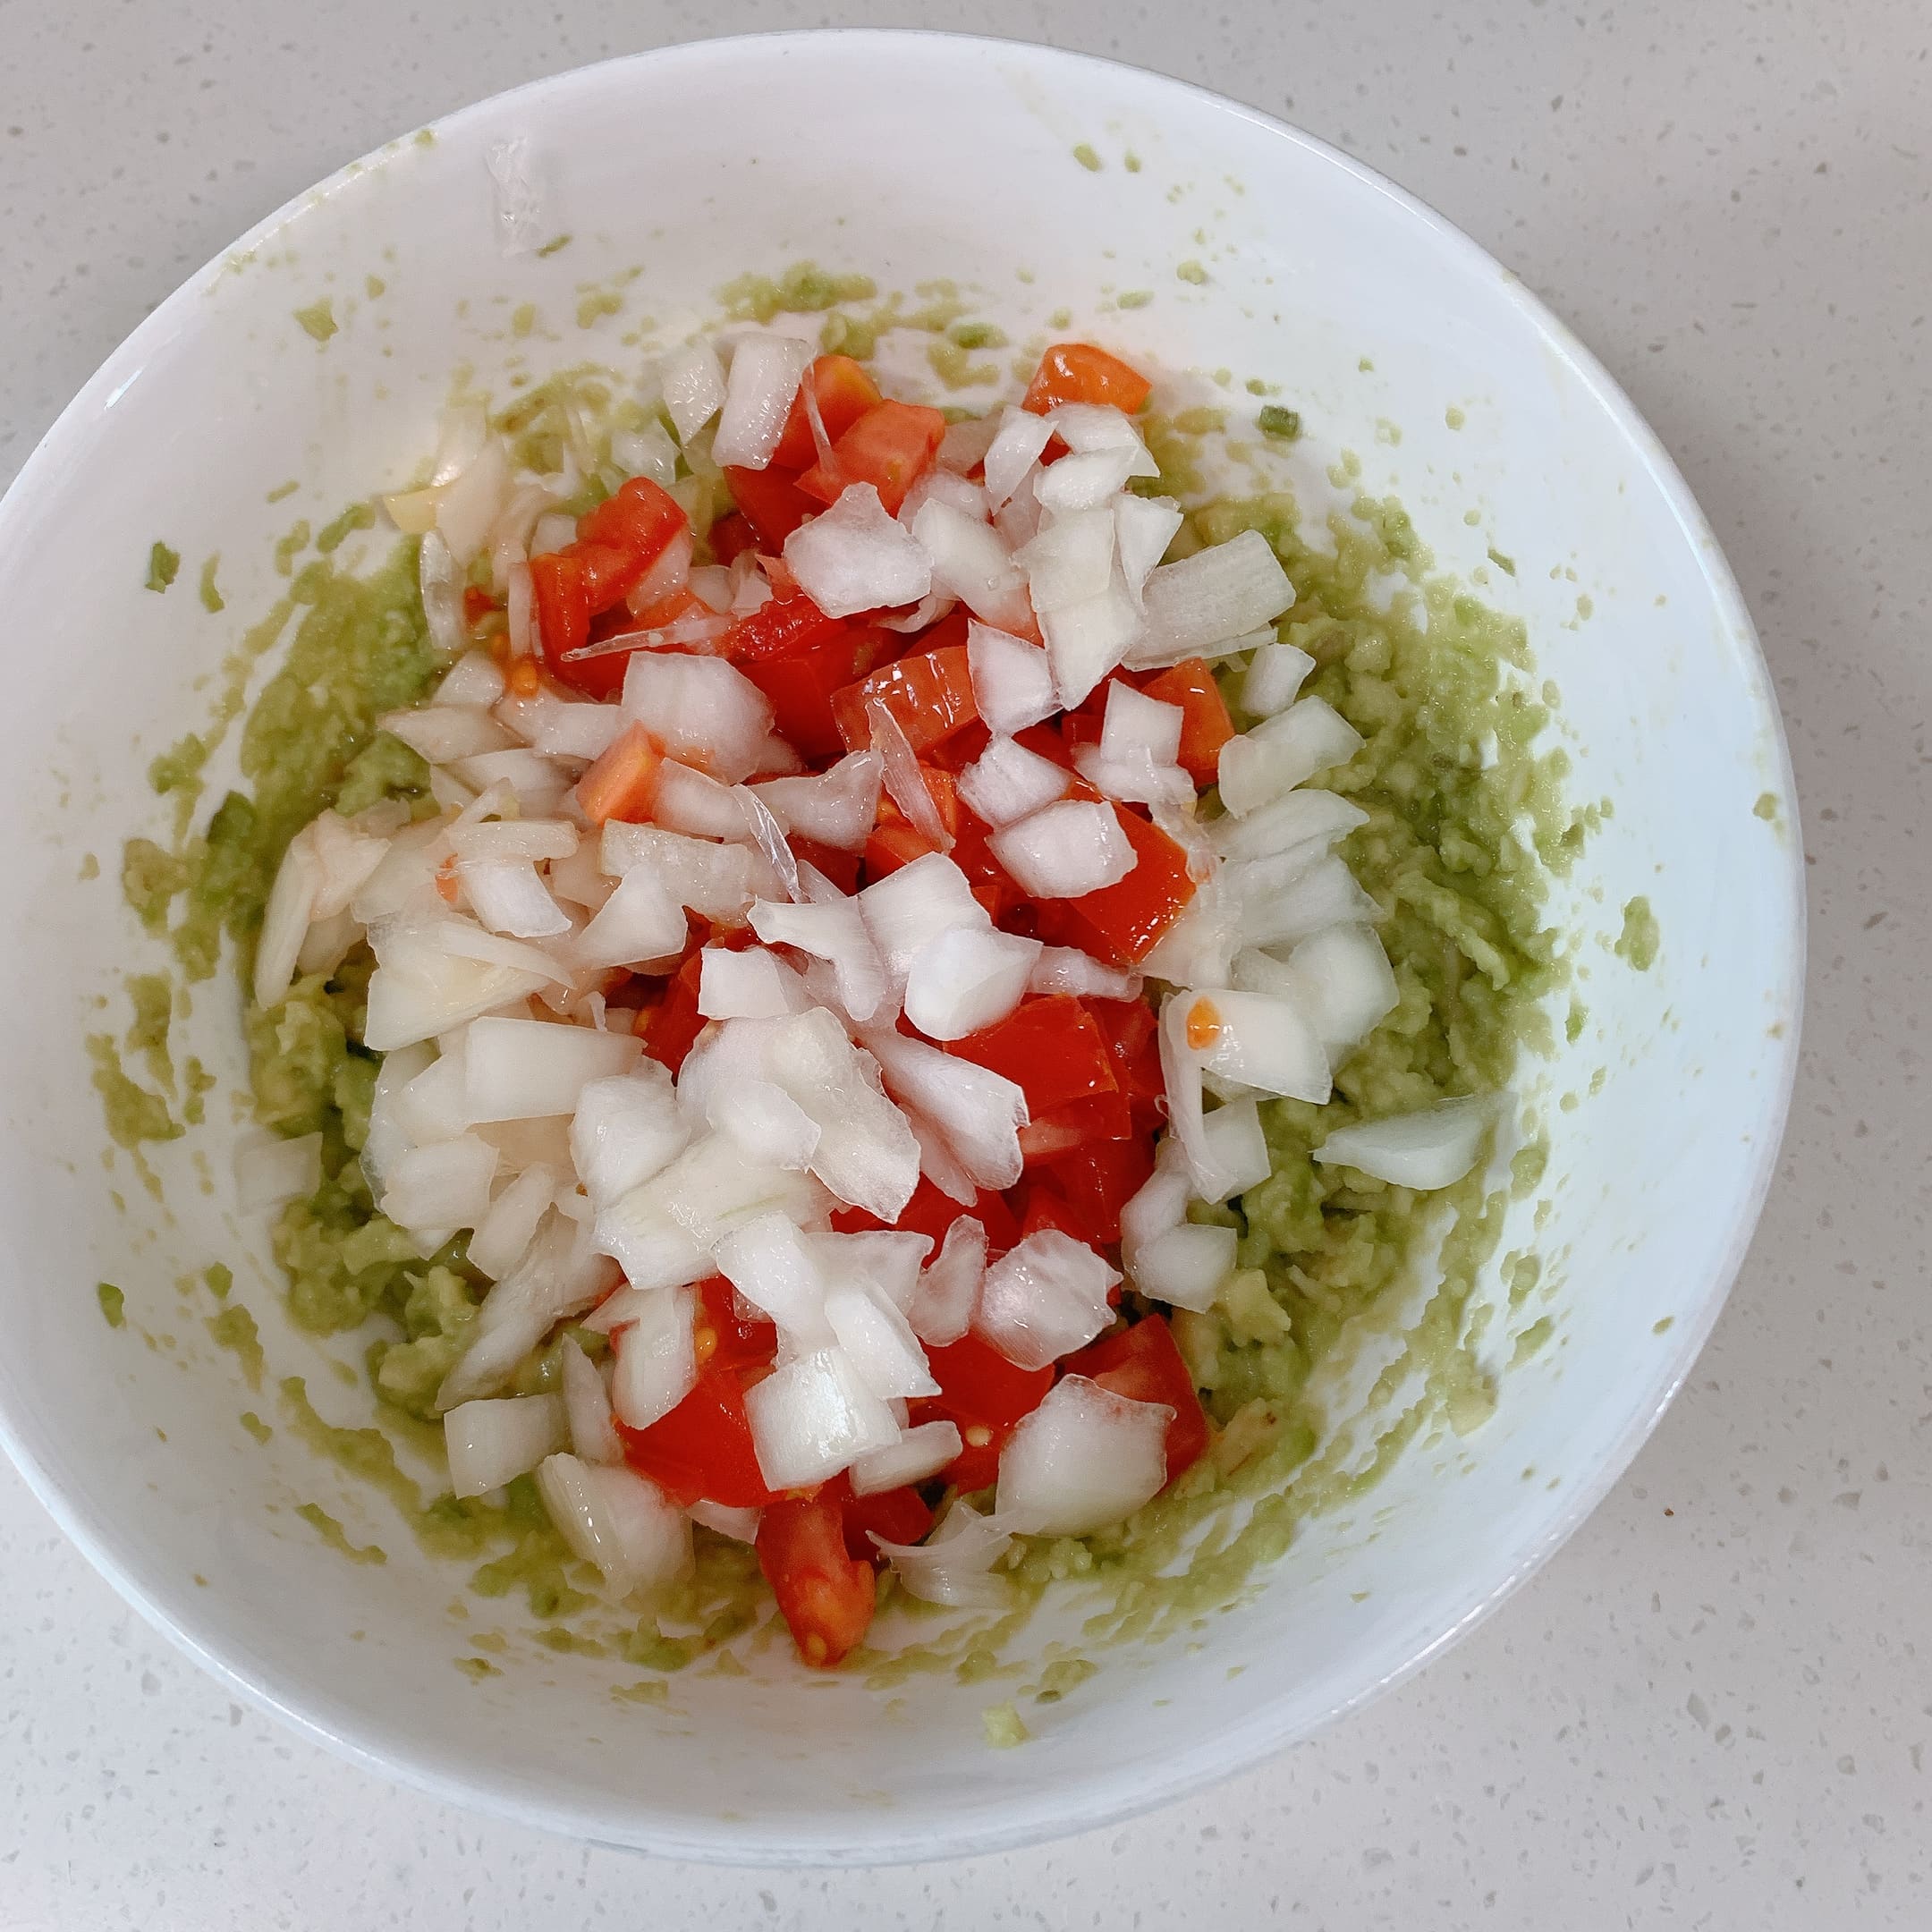 과카몰리 으깬 아보카도에 양파와 토마토 넣기